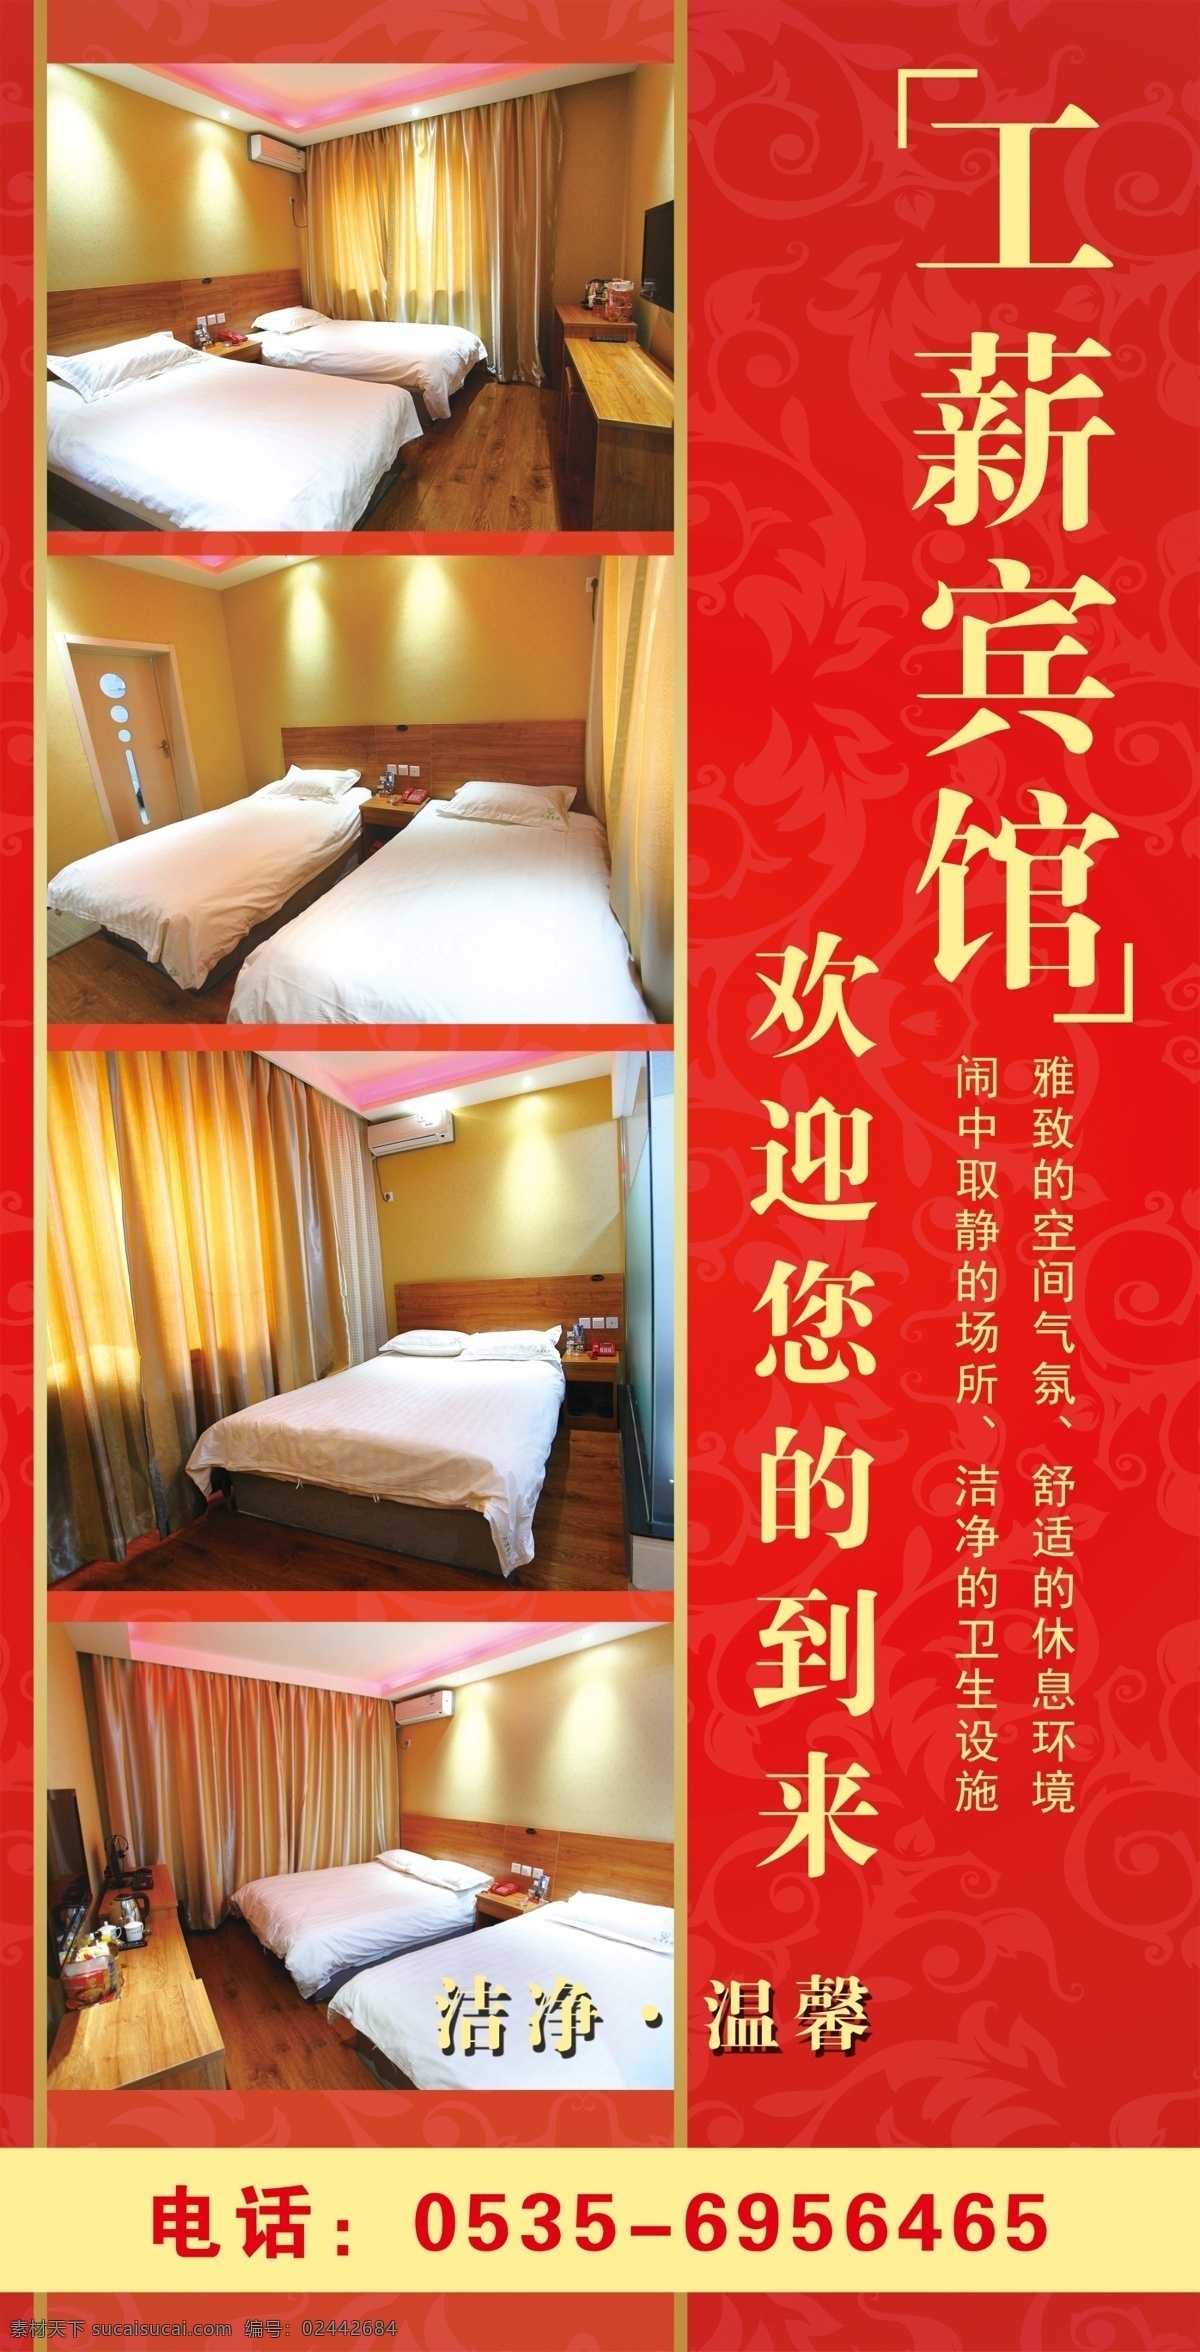 宾馆广告 宾馆 旅馆 标准间 大床房 家庭房 洁净 温馨 红色背景 暗纹